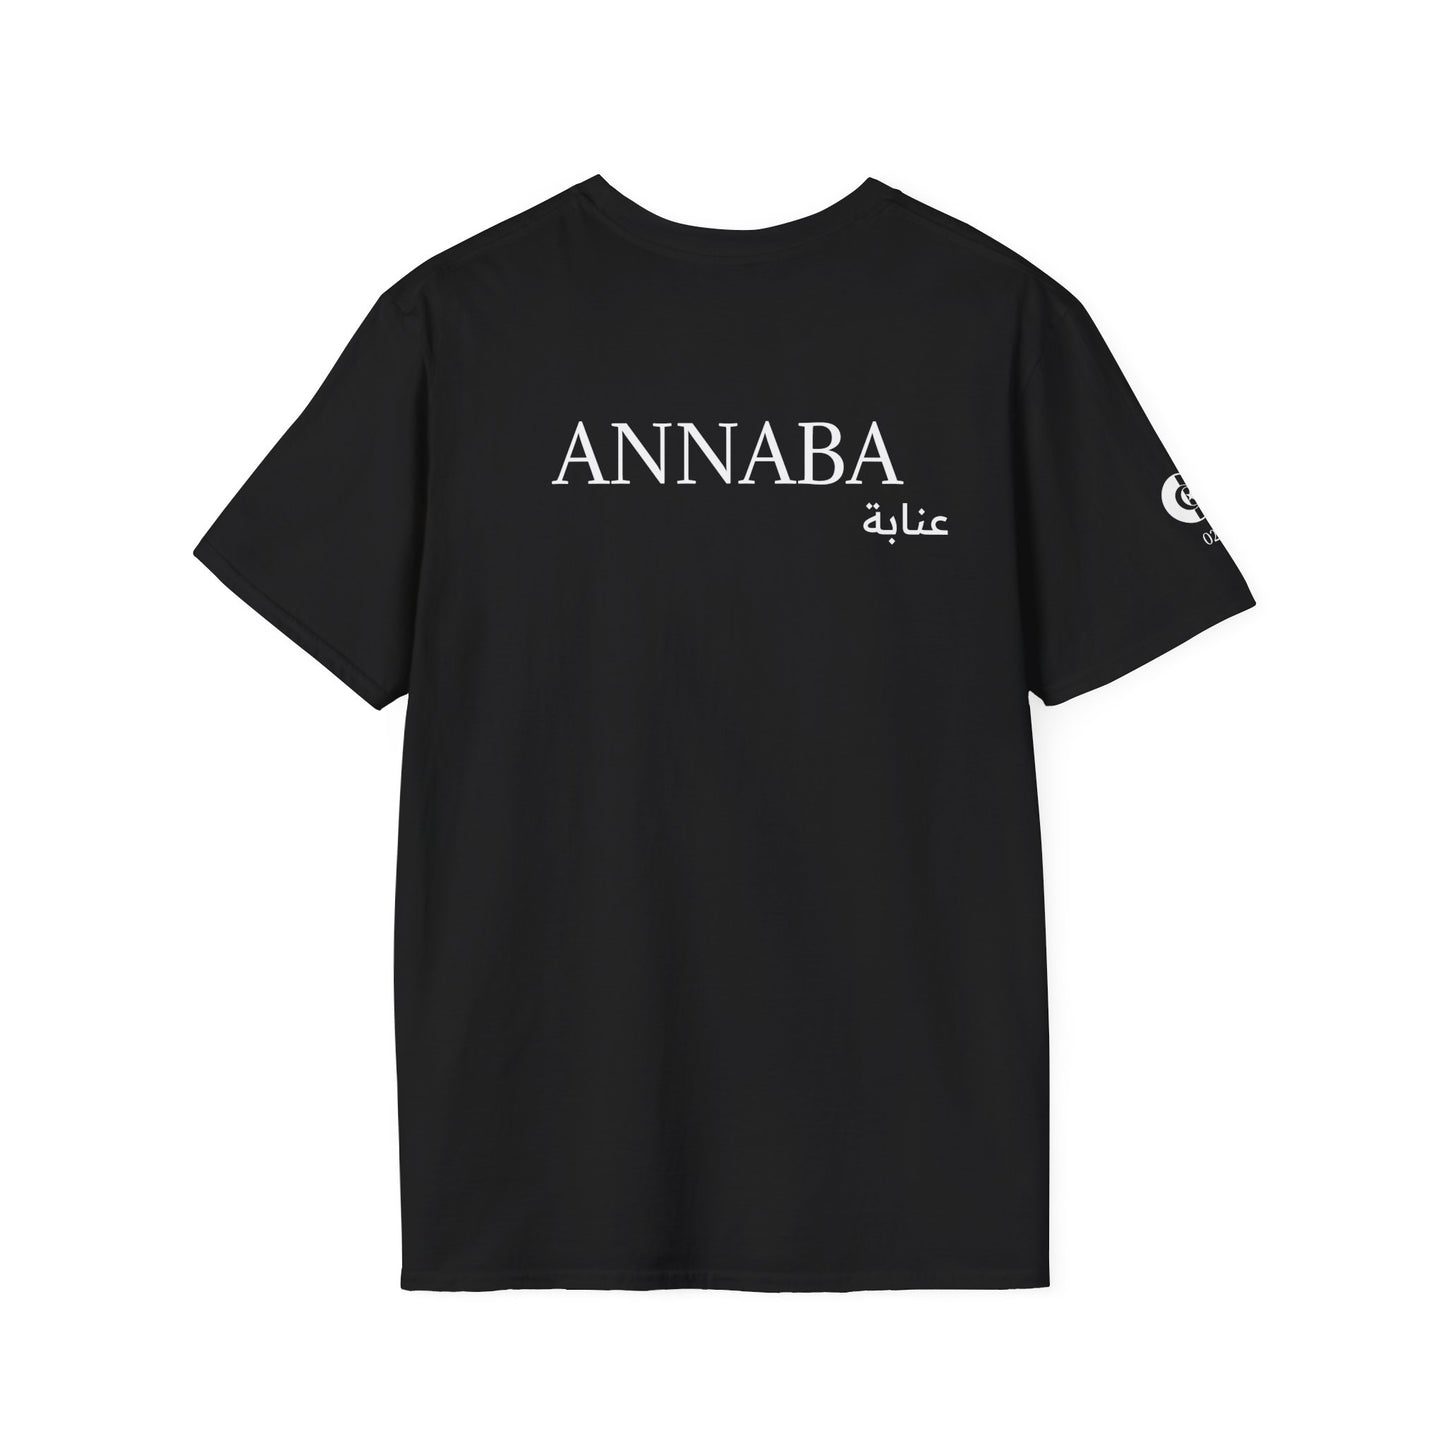 T-Shirt ANNABA 23